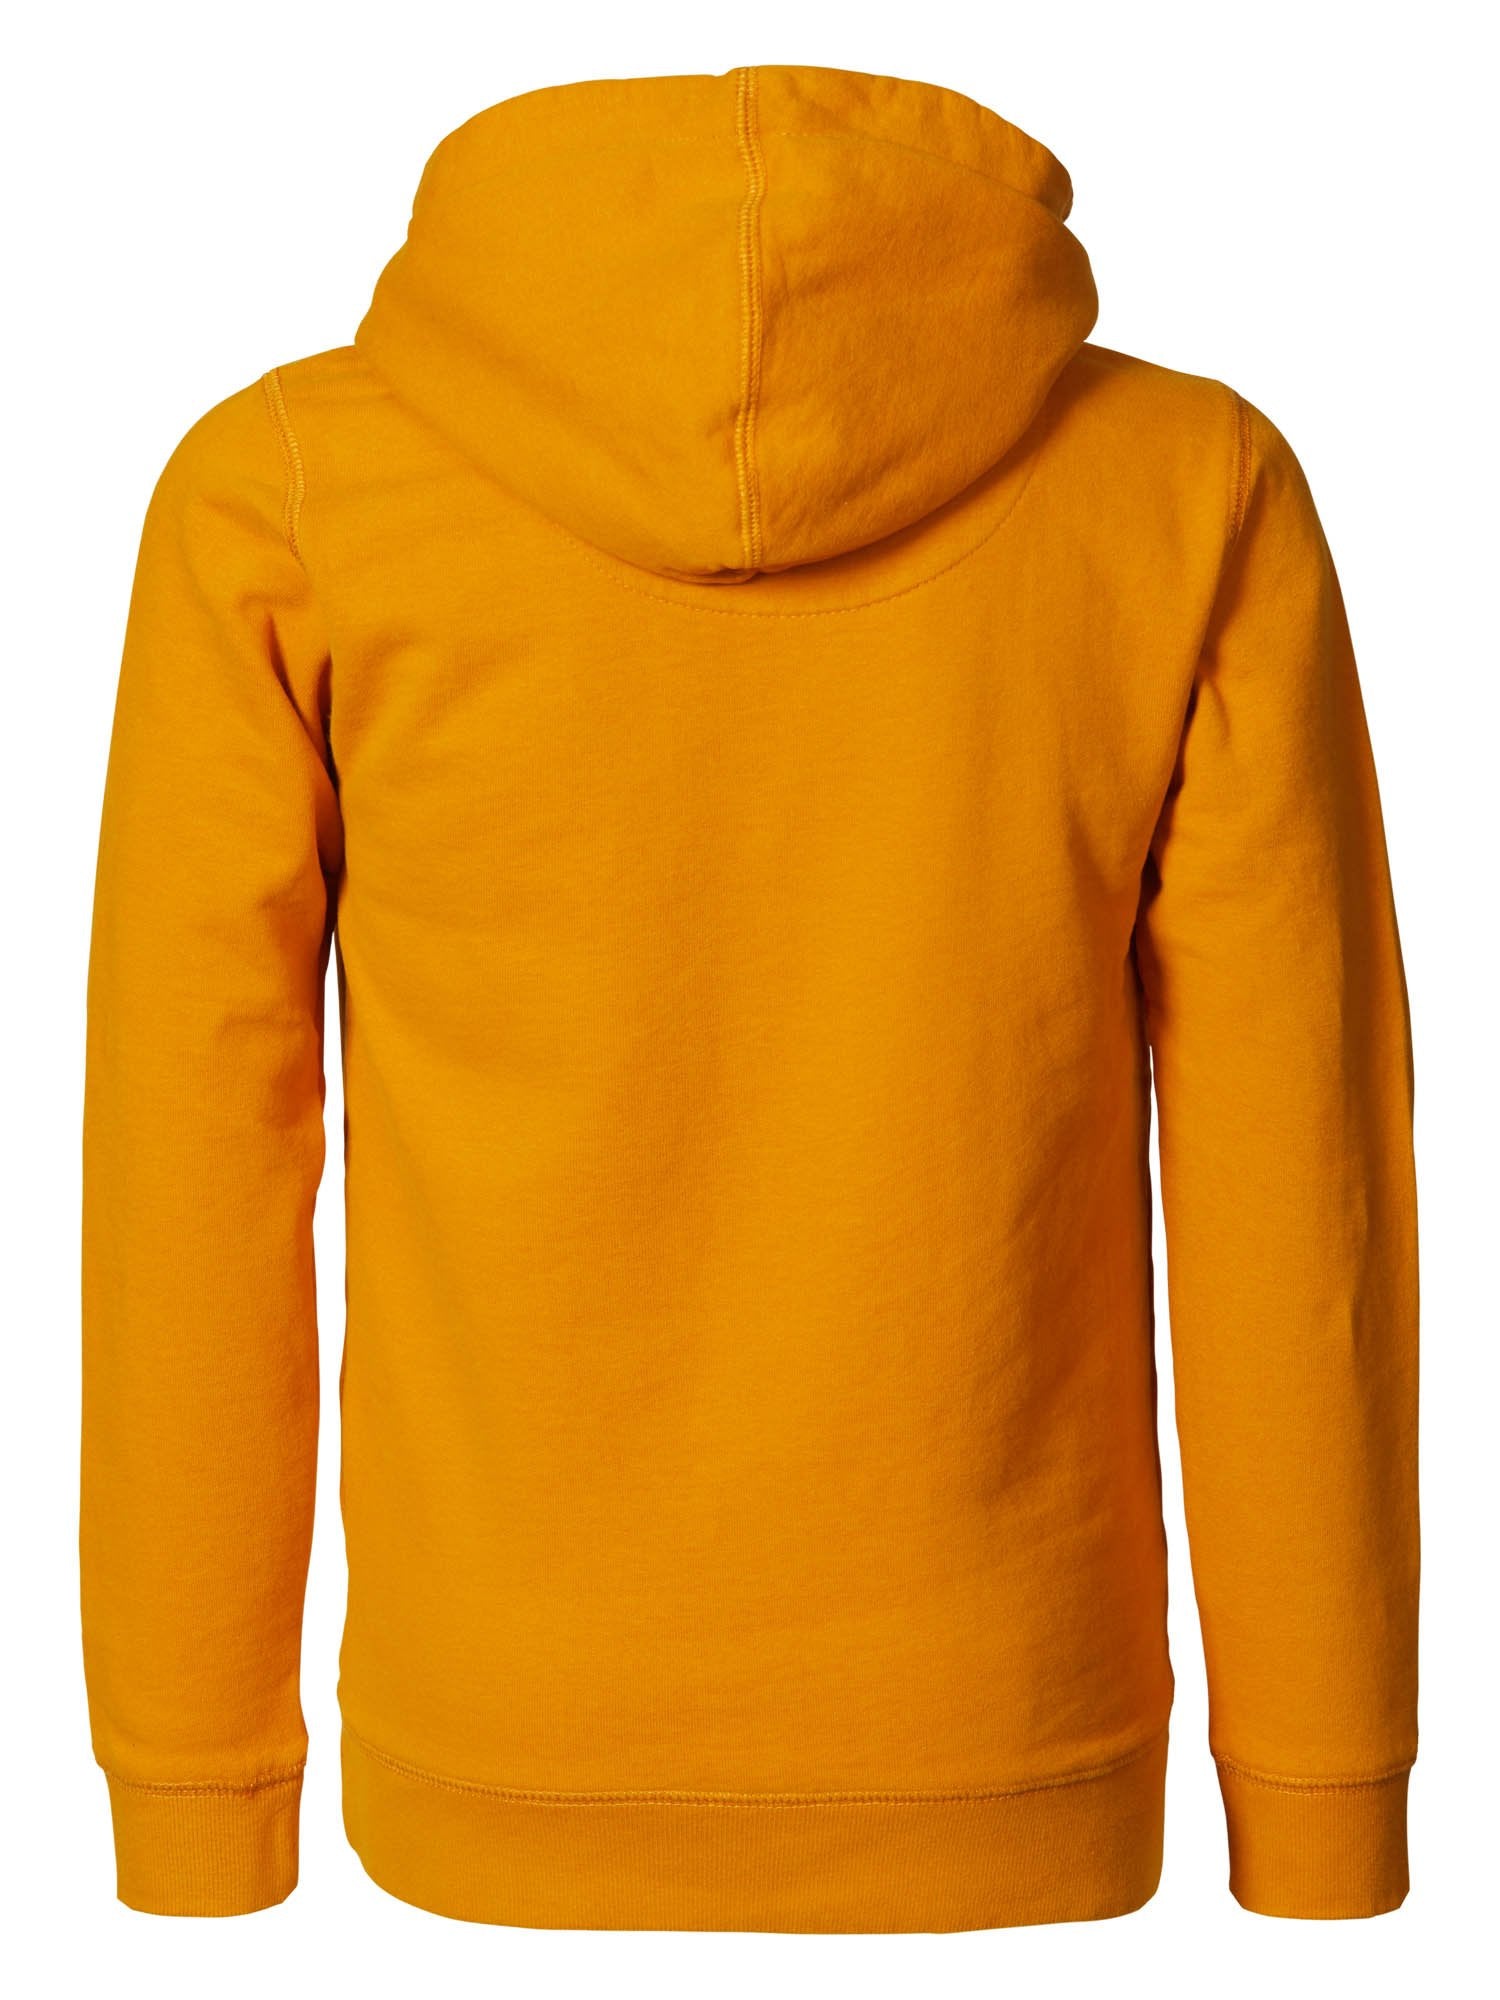 Jongens Hooded sweater van Petrol in de kleur Gold in maat 176.